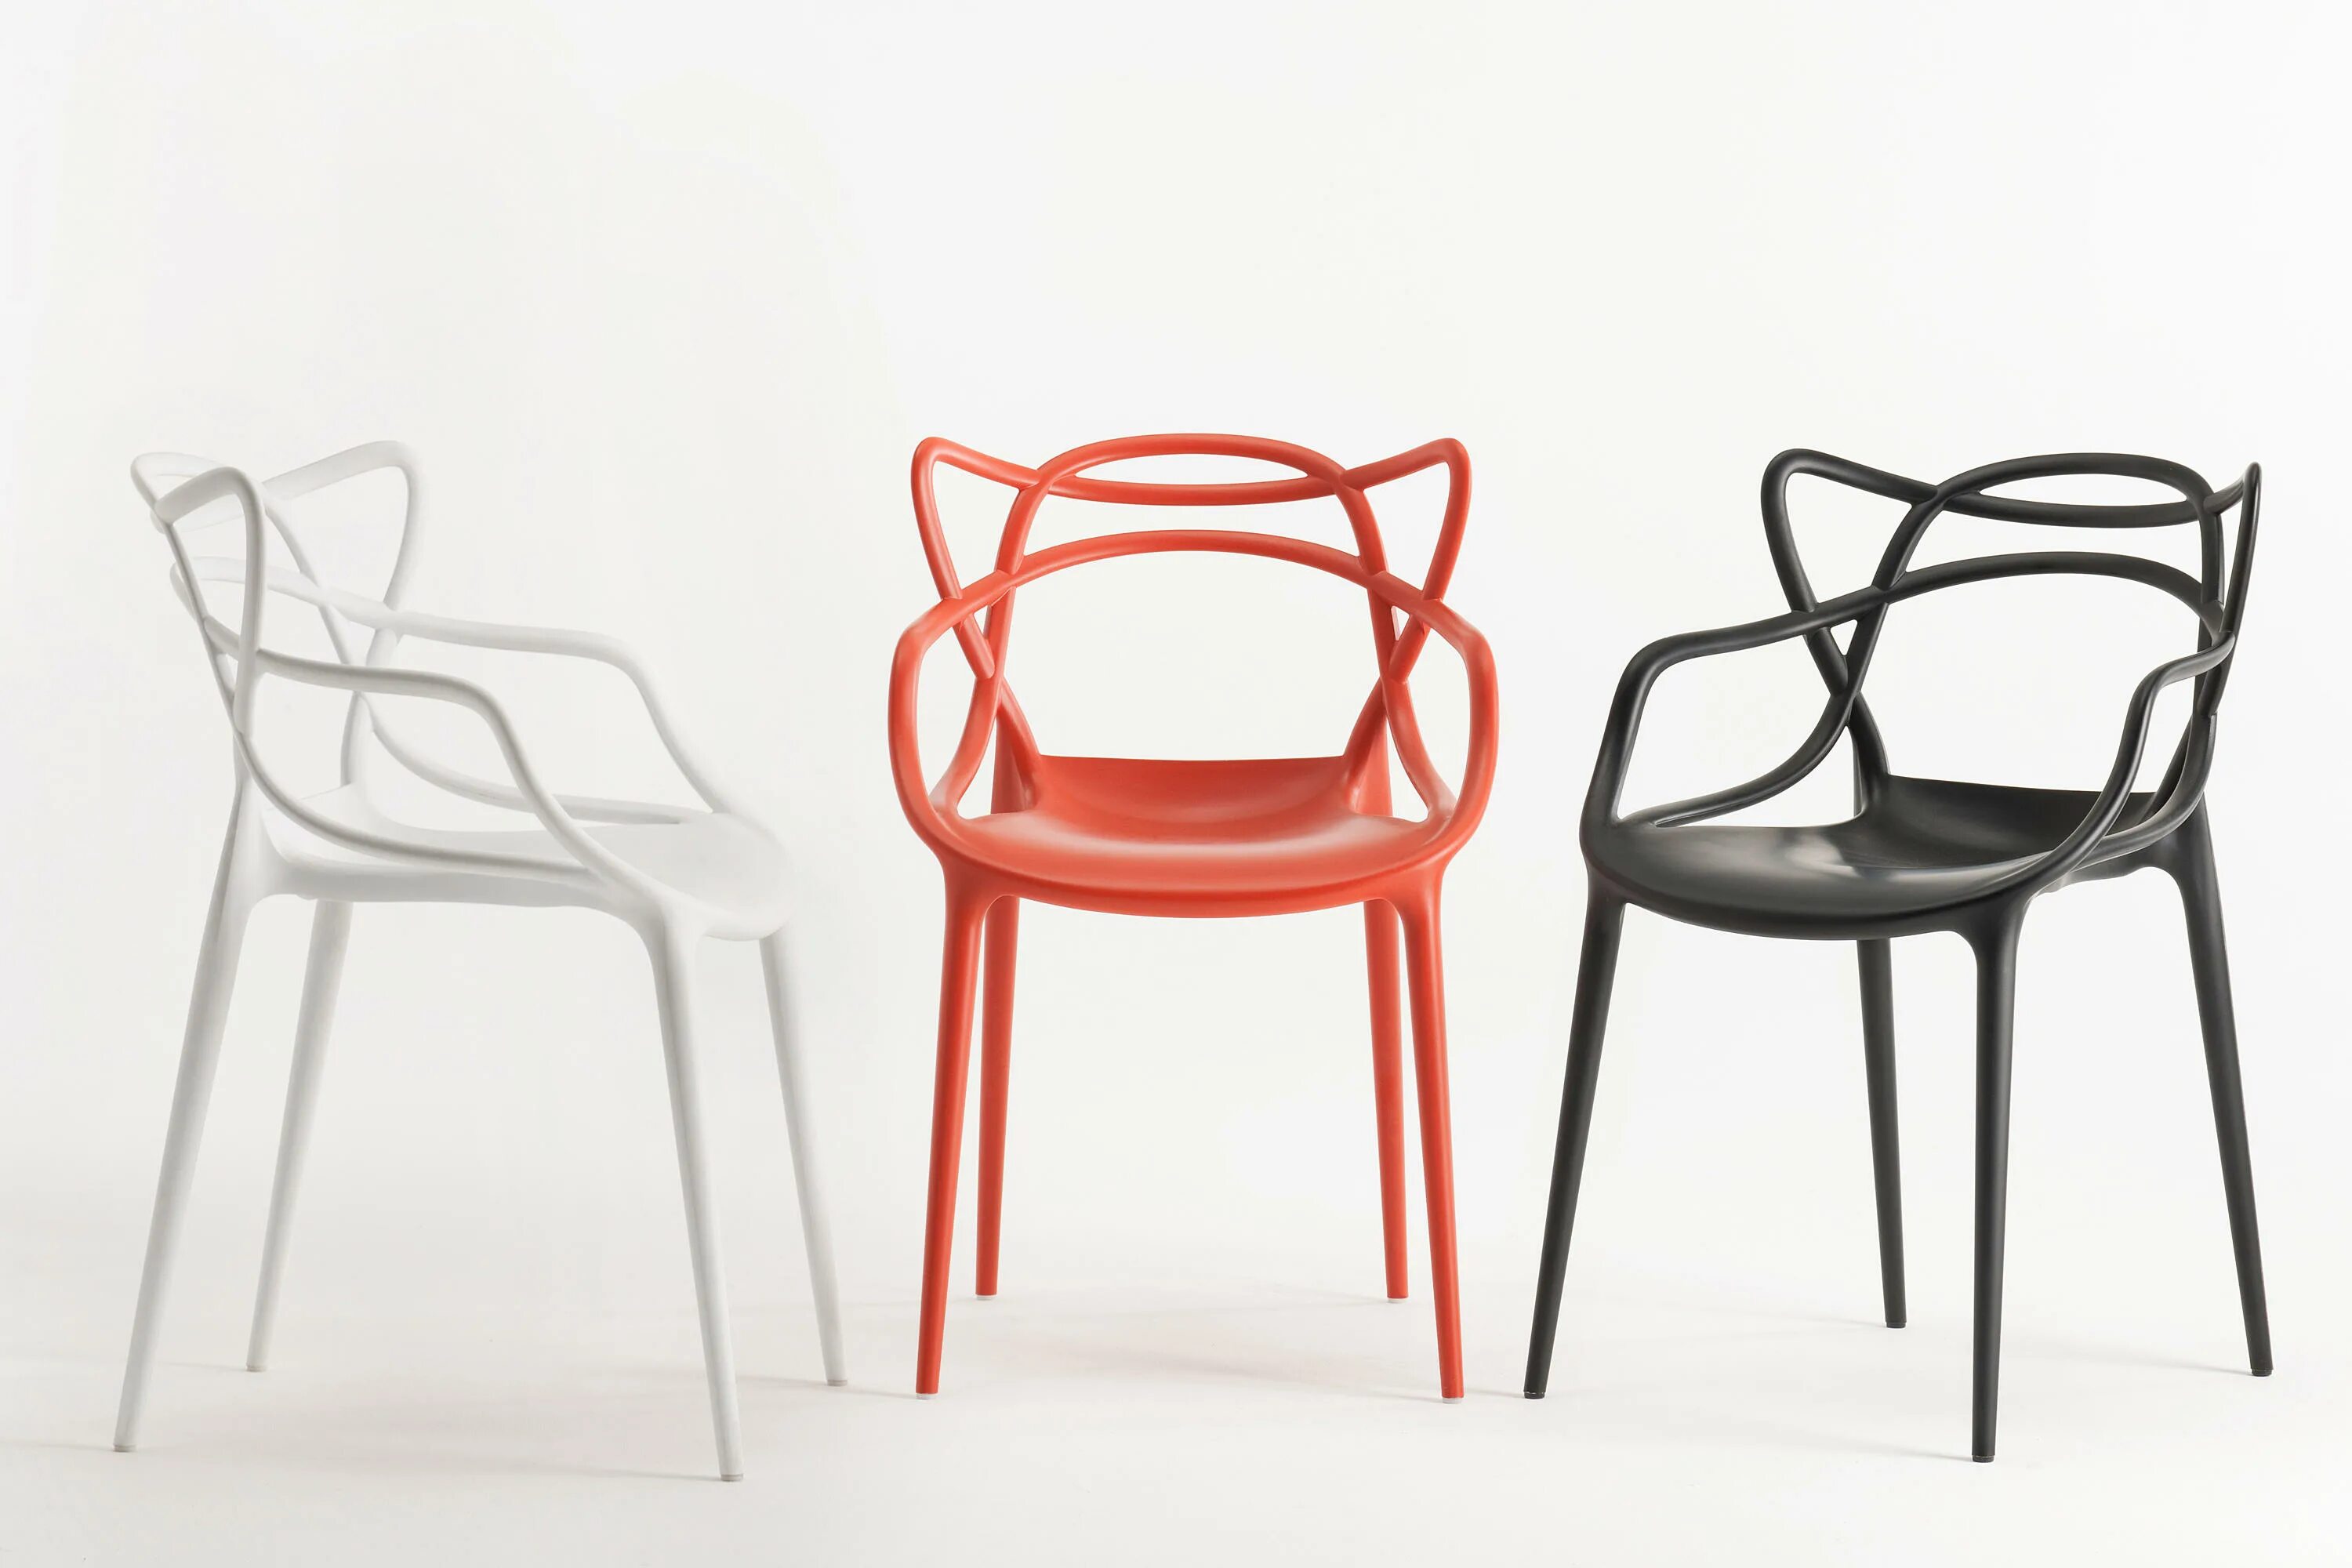 Стул Kartell Masters. Philippe Starck стулья. Прокат мебели